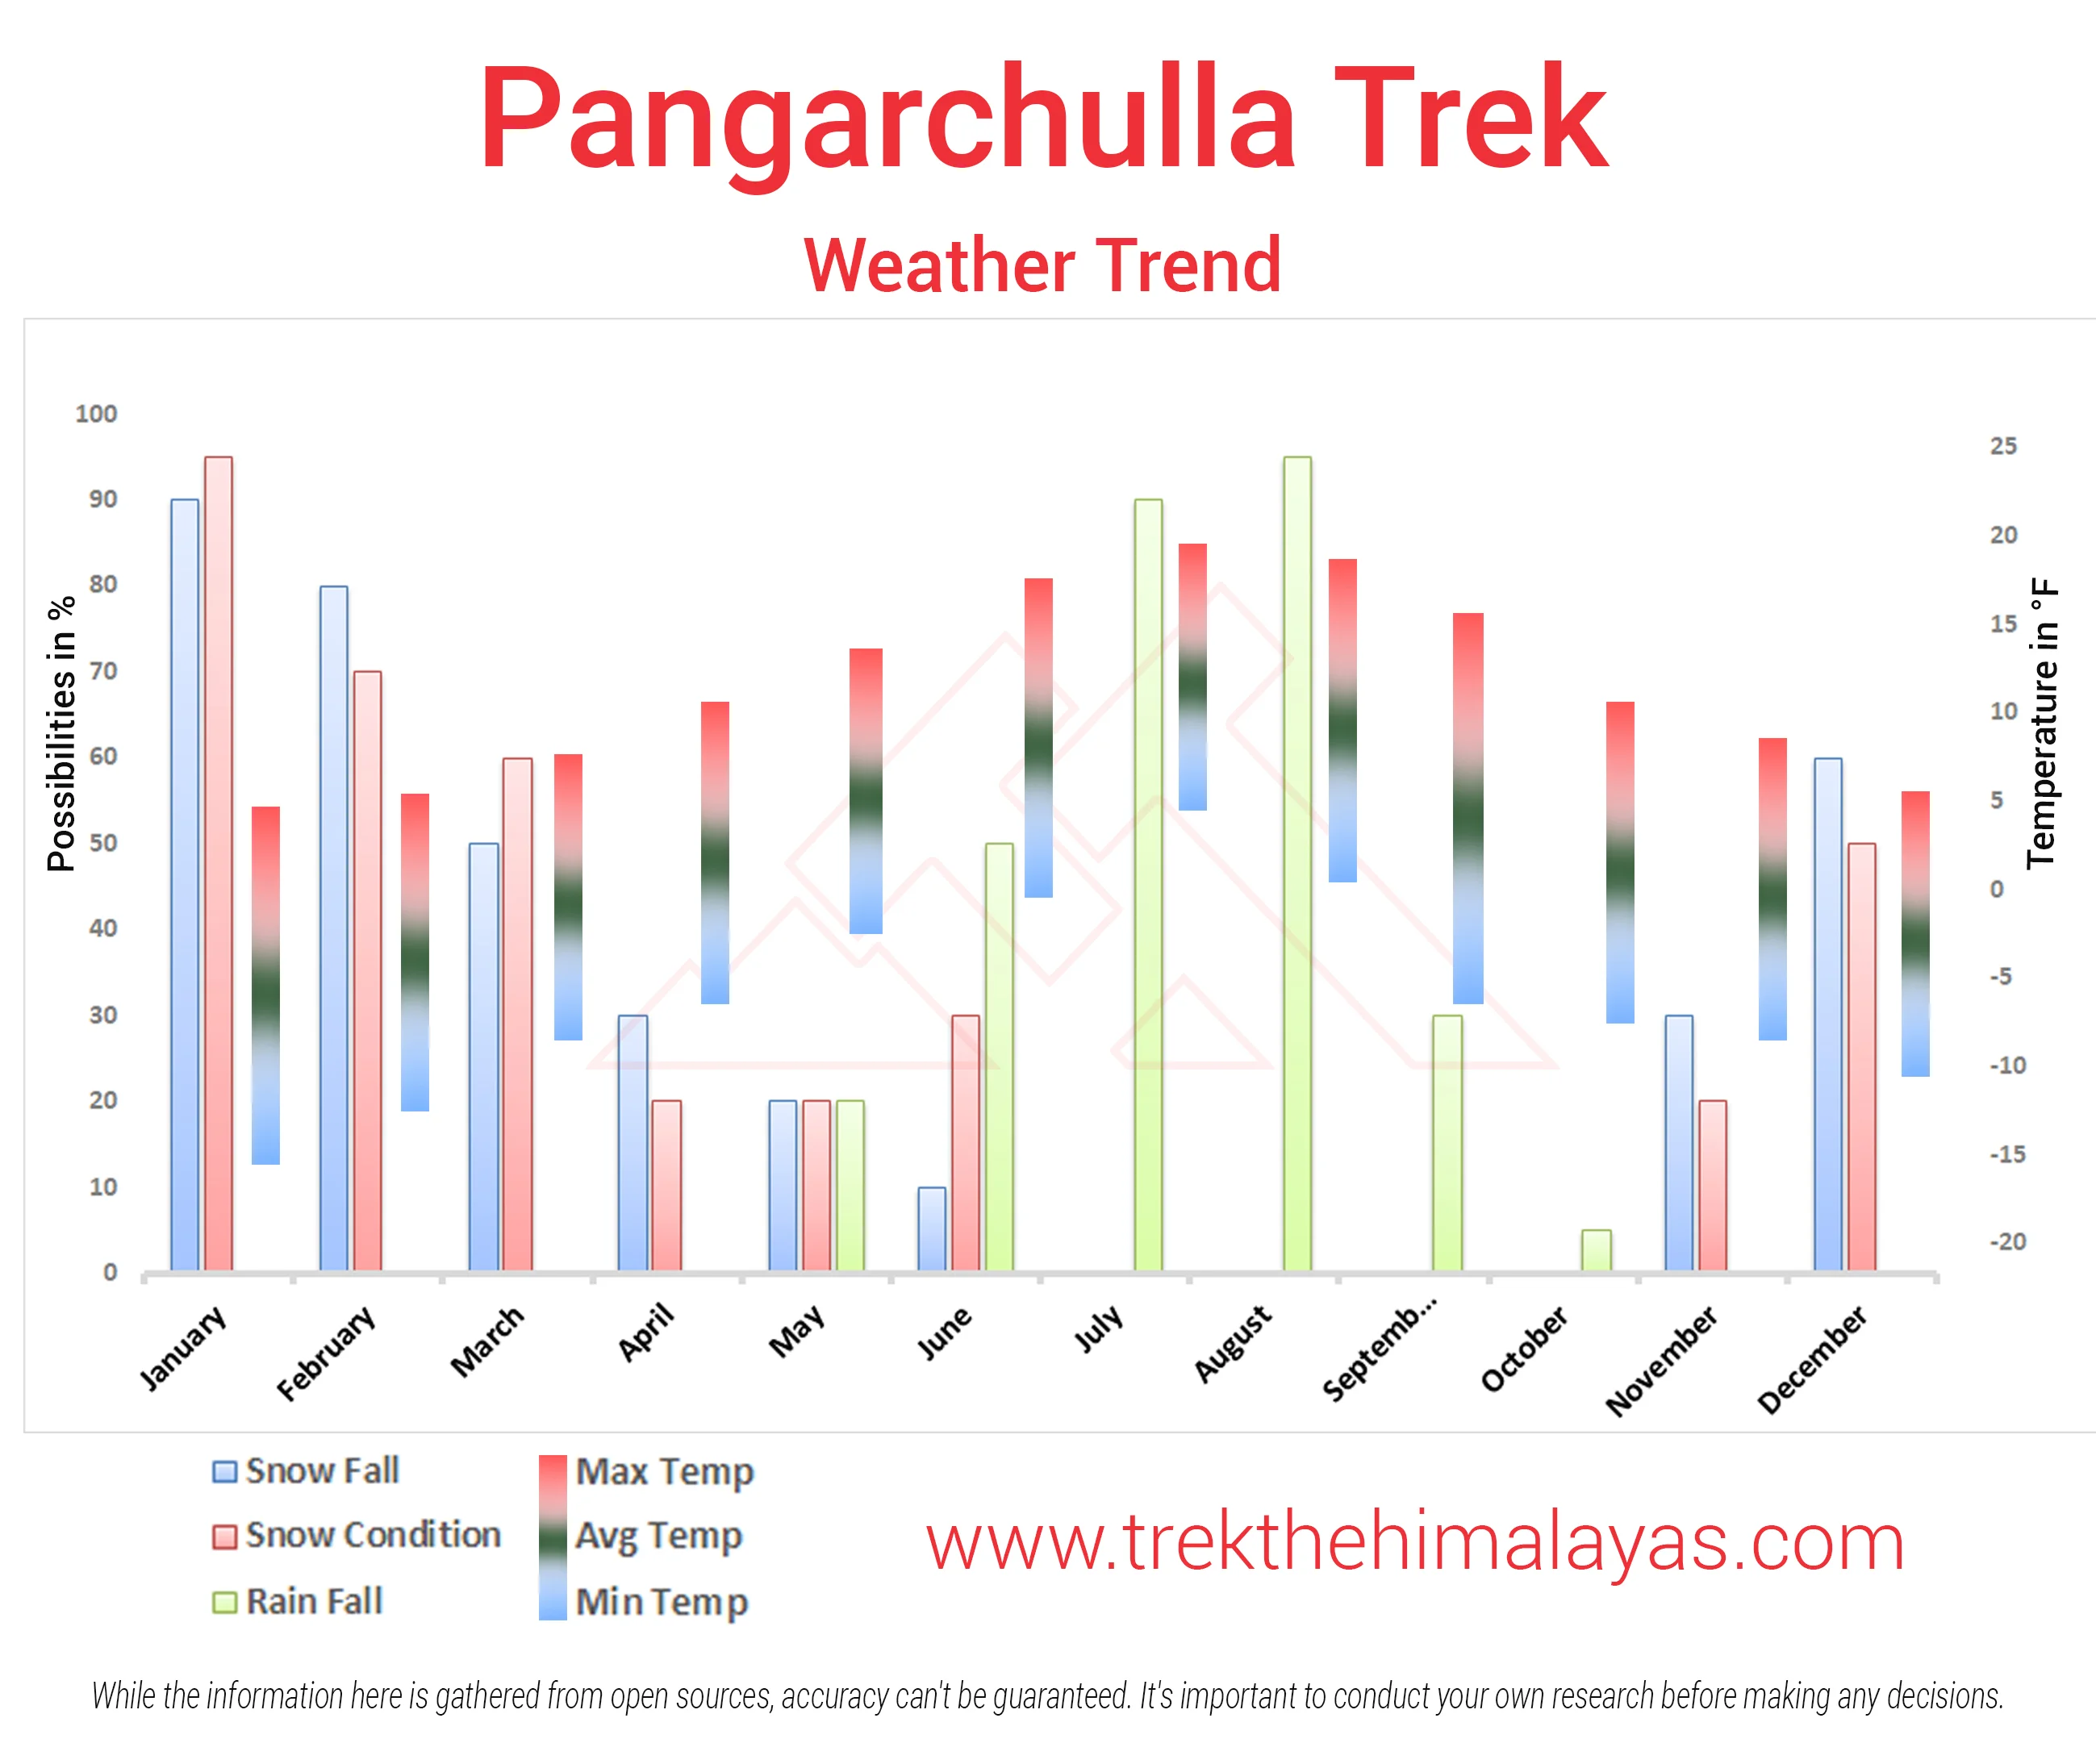 Pangarchulla Peak Trek Maps